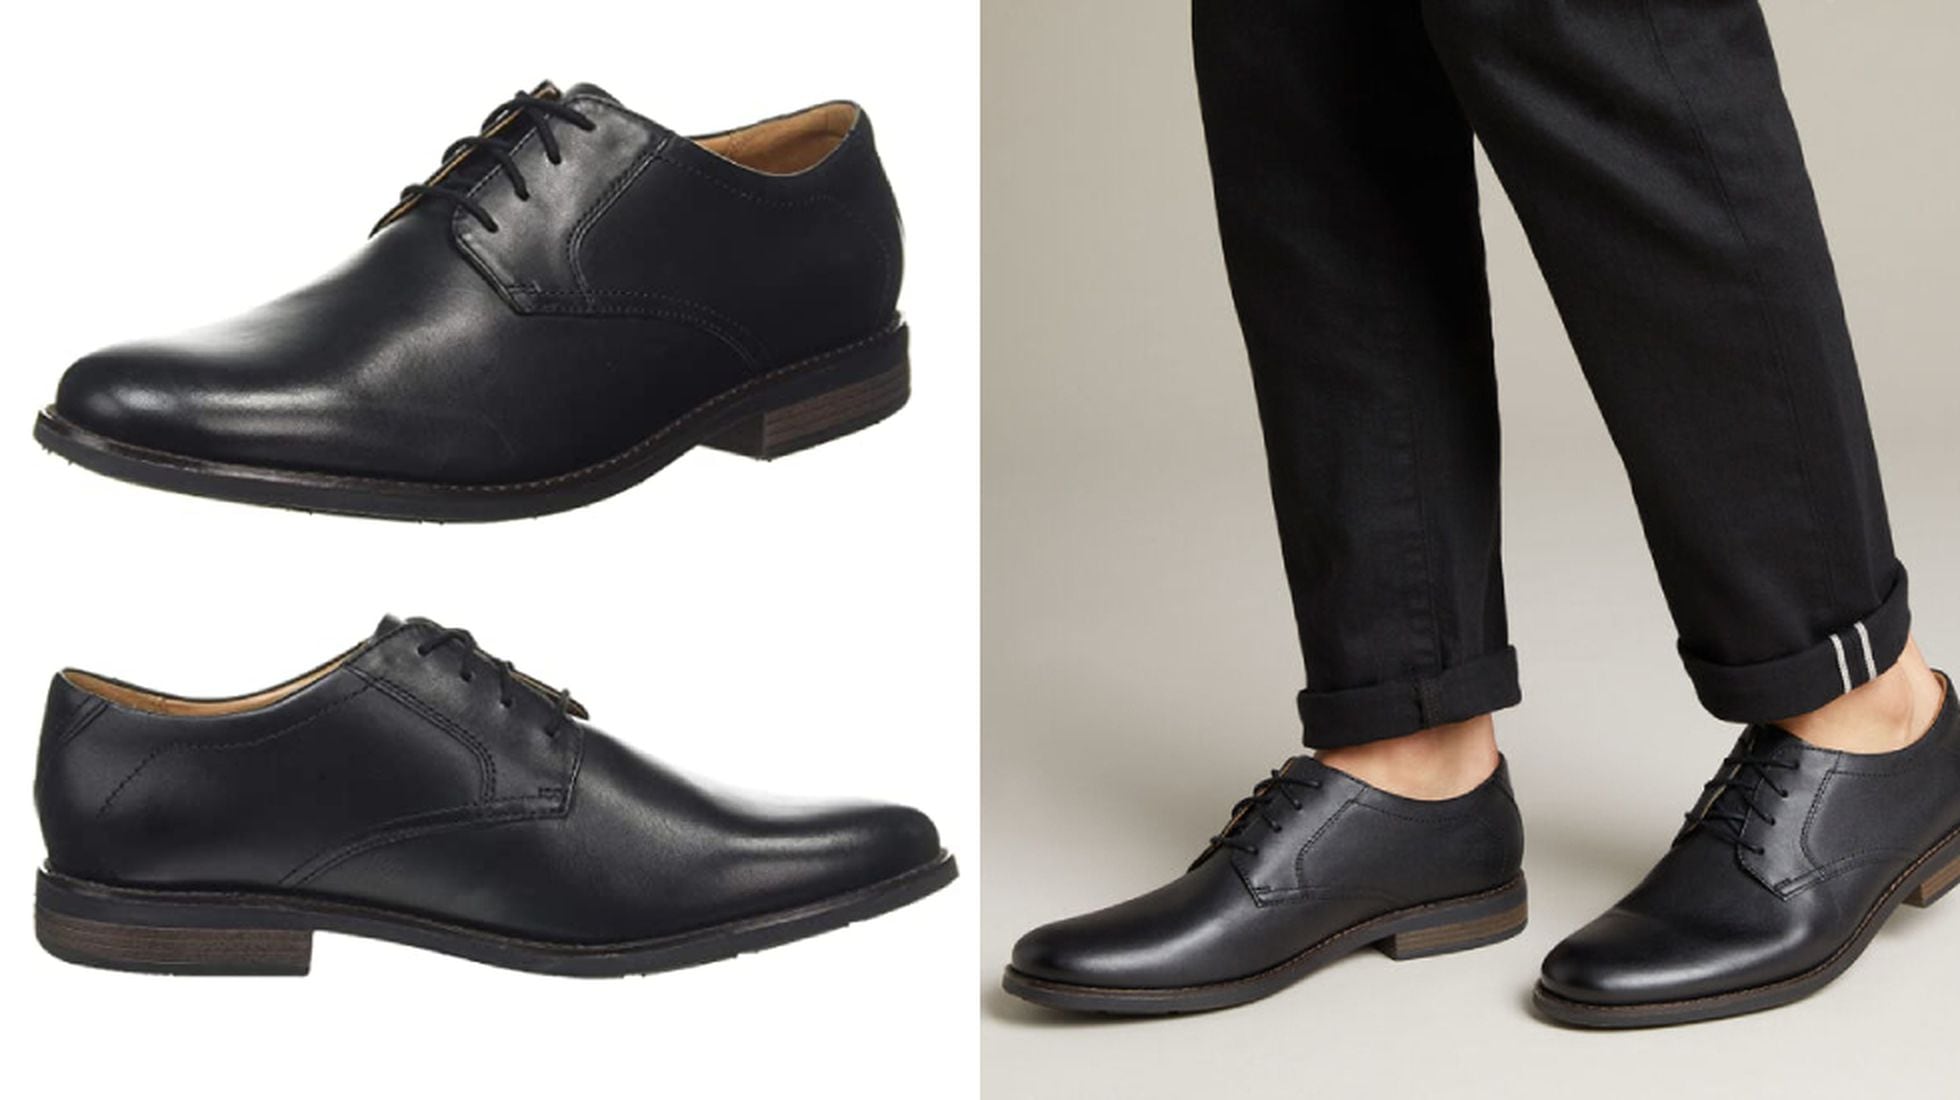 Diez zapatos de vestir para hombre precios asequibles en el regreso a la oficina | Escaparate: compras y ofertas | EL PAÍS